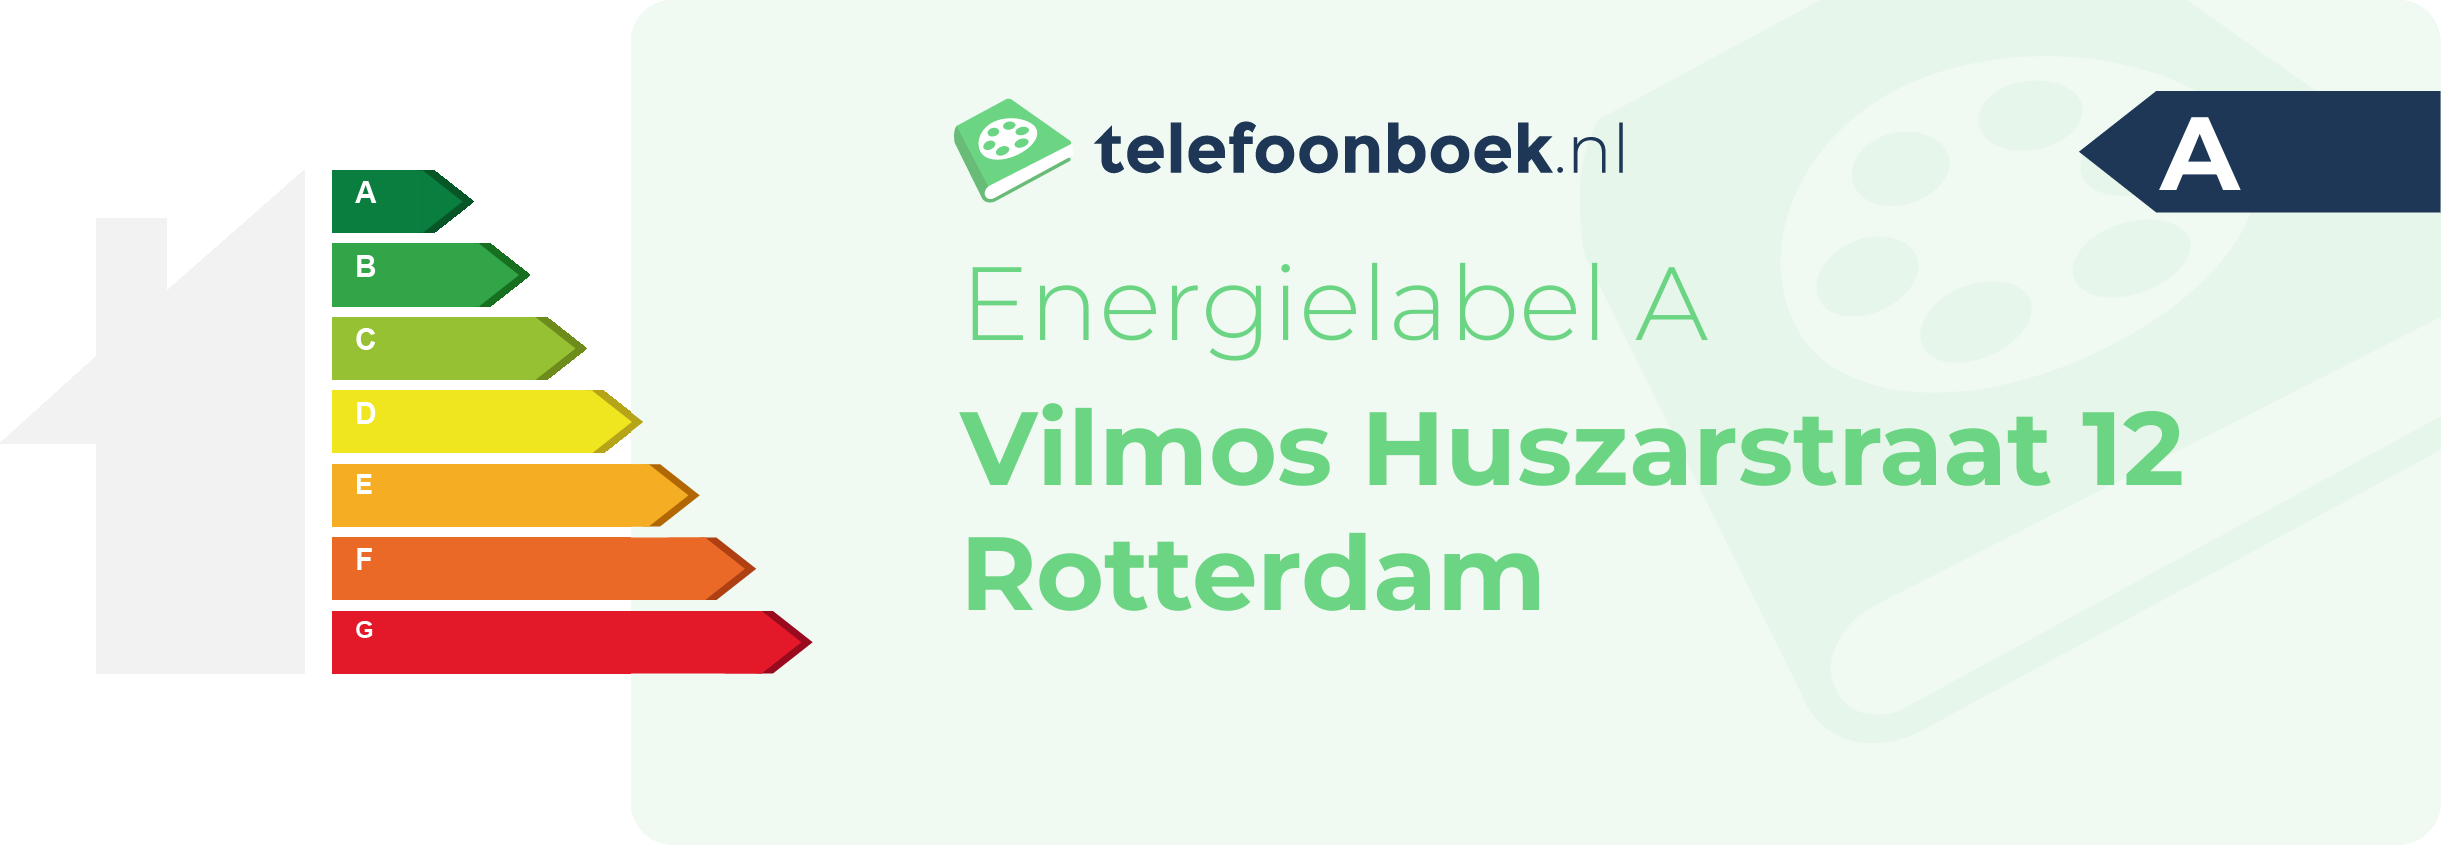 Energielabel Vilmos Huszarstraat 12 Rotterdam